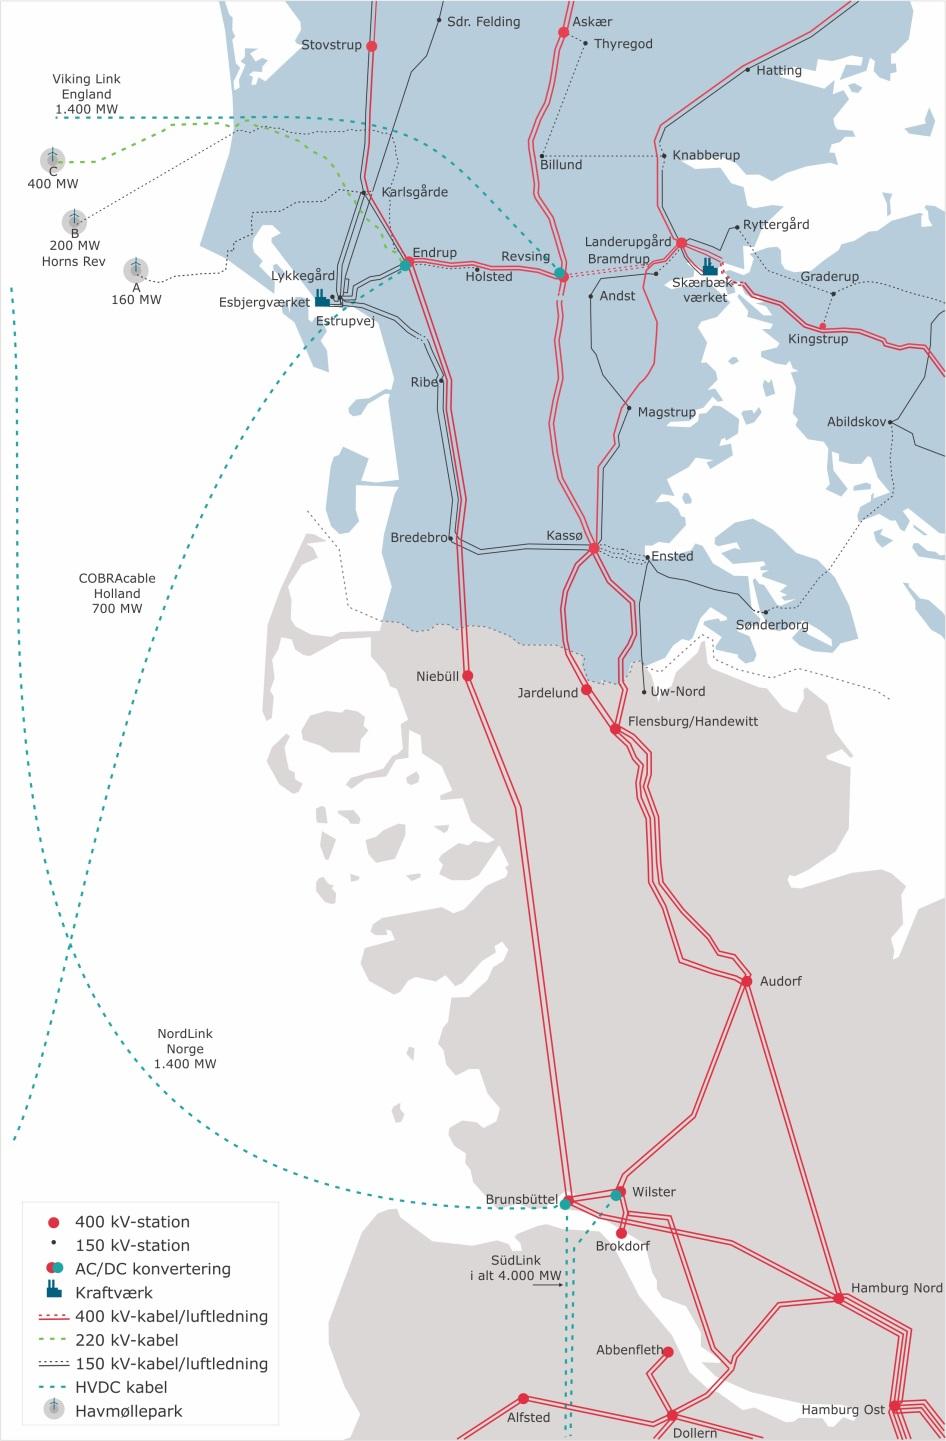 Orientering om business case for Vestkystforbindelse og Viking Link 10/26